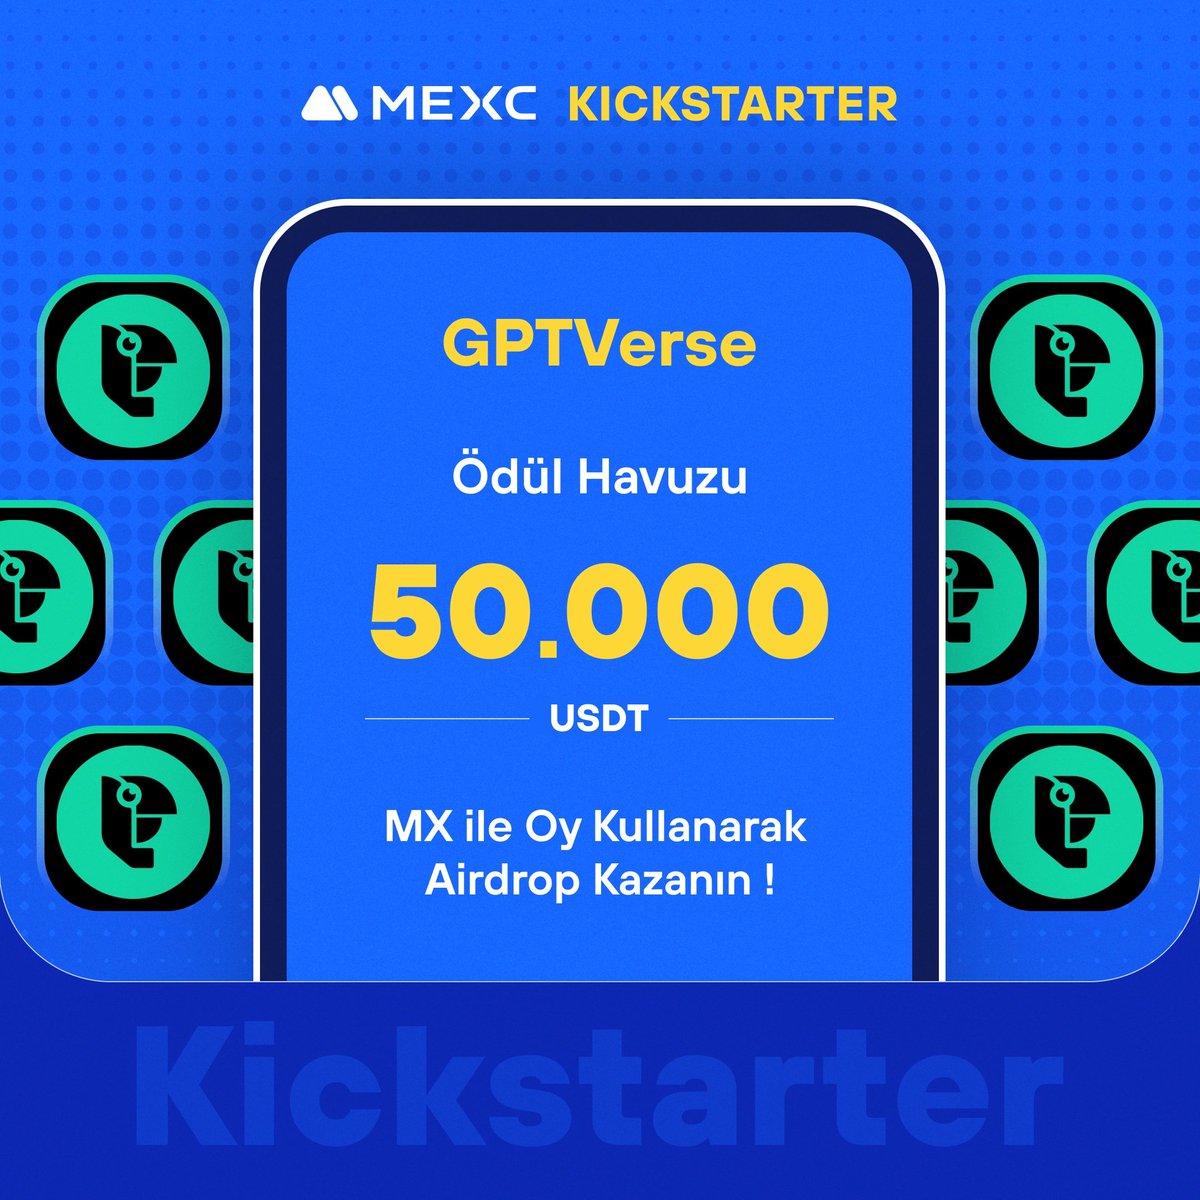 🚀 #MEXCKickstarter - @gpt_verse $GPTV Projesi için Oy Kullanın, 50.000 $USDT Airdrop Kazanın!

🗳️ Oylama Tarihi: 29 Nisan 2024 12.00 - 30 Nisan 2024 11.50

📌 Ayrıntılar: mexctr.info/3w9uLf7

#MEXCTürkiye #MXToken #MX #BTC